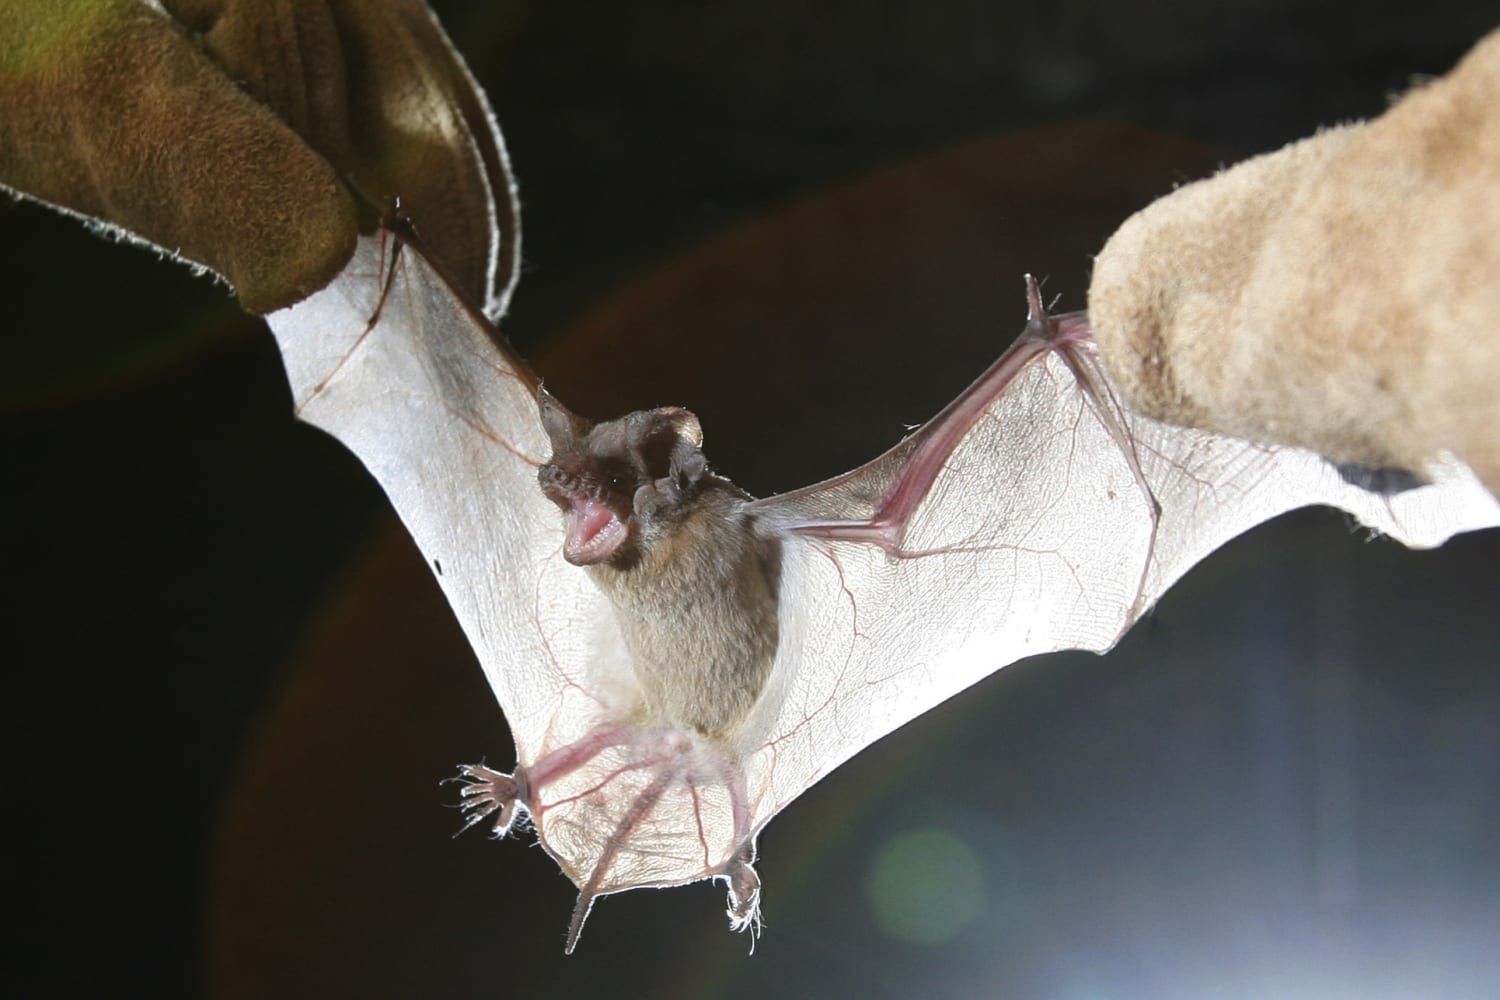 Fungus that causes fatal bat disease found in Louisiana